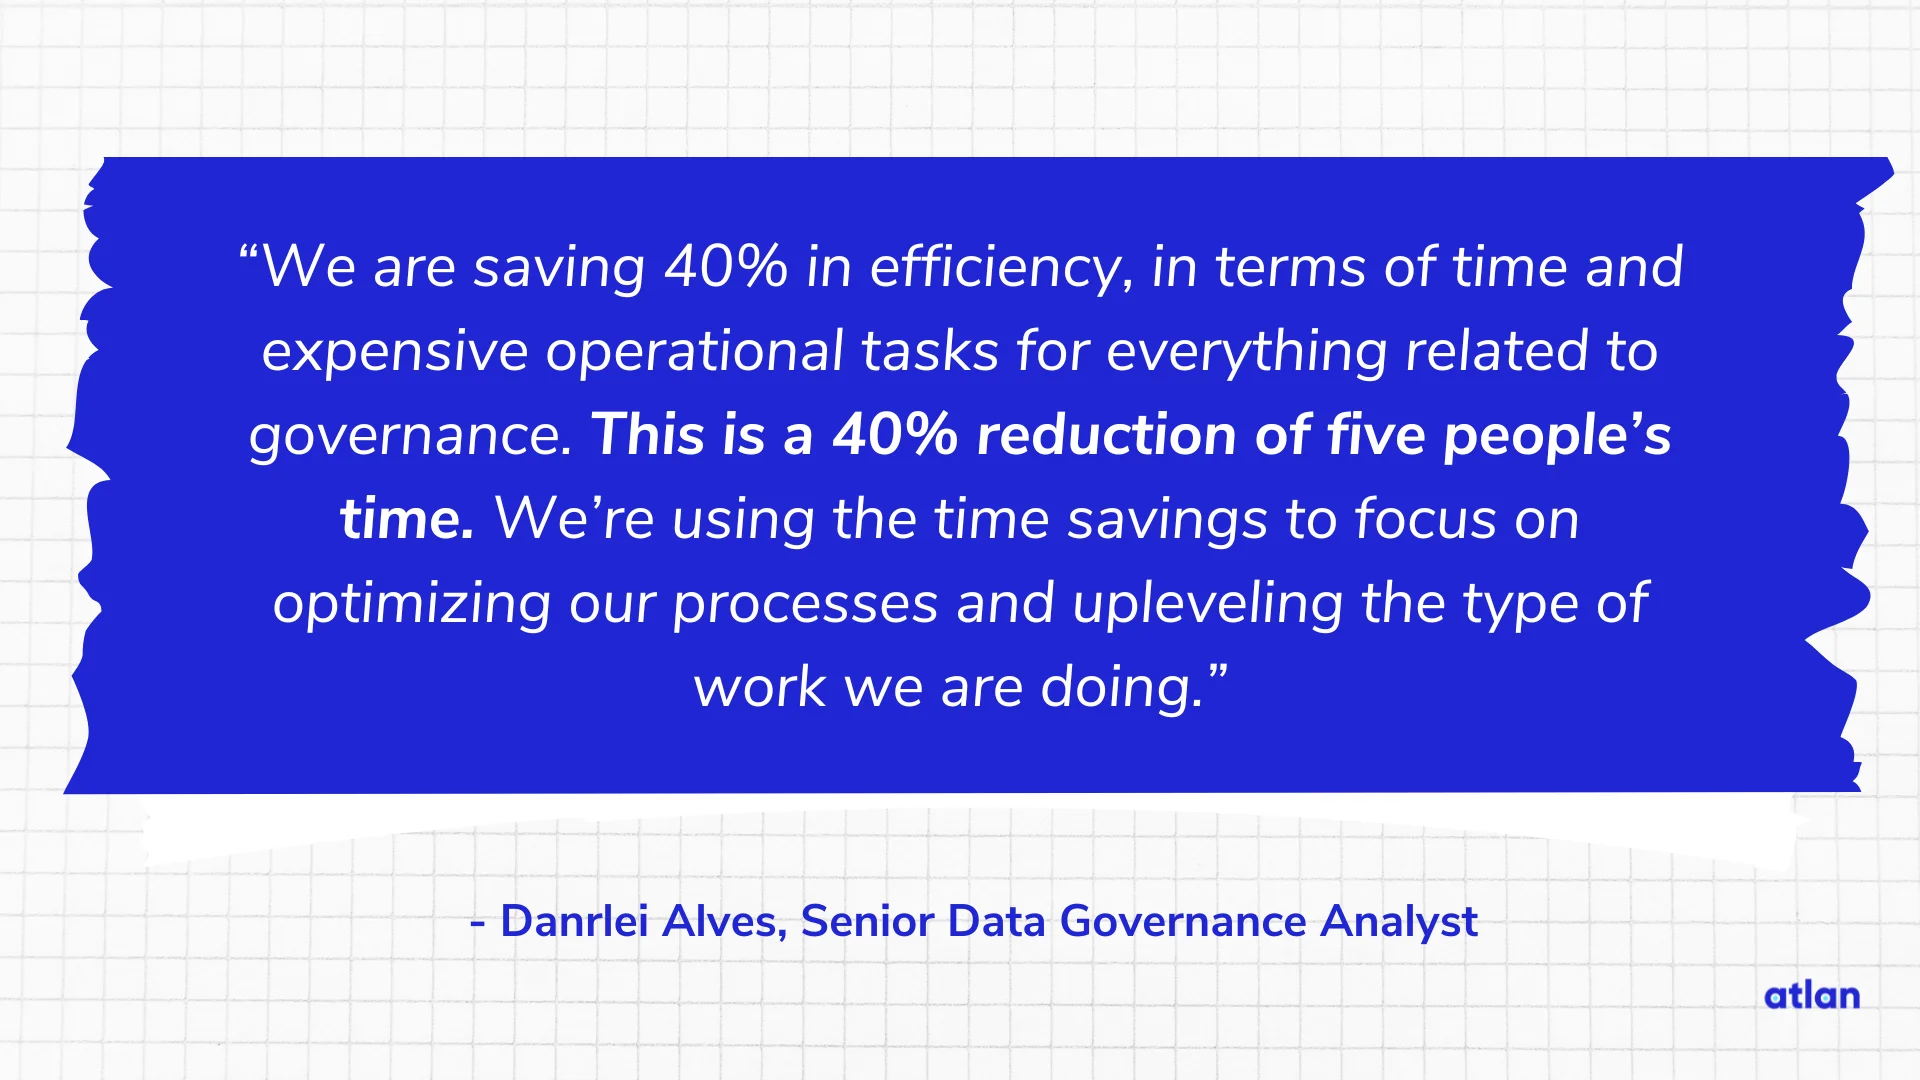 Danrlei Alves, Senior Data Governance Analyst